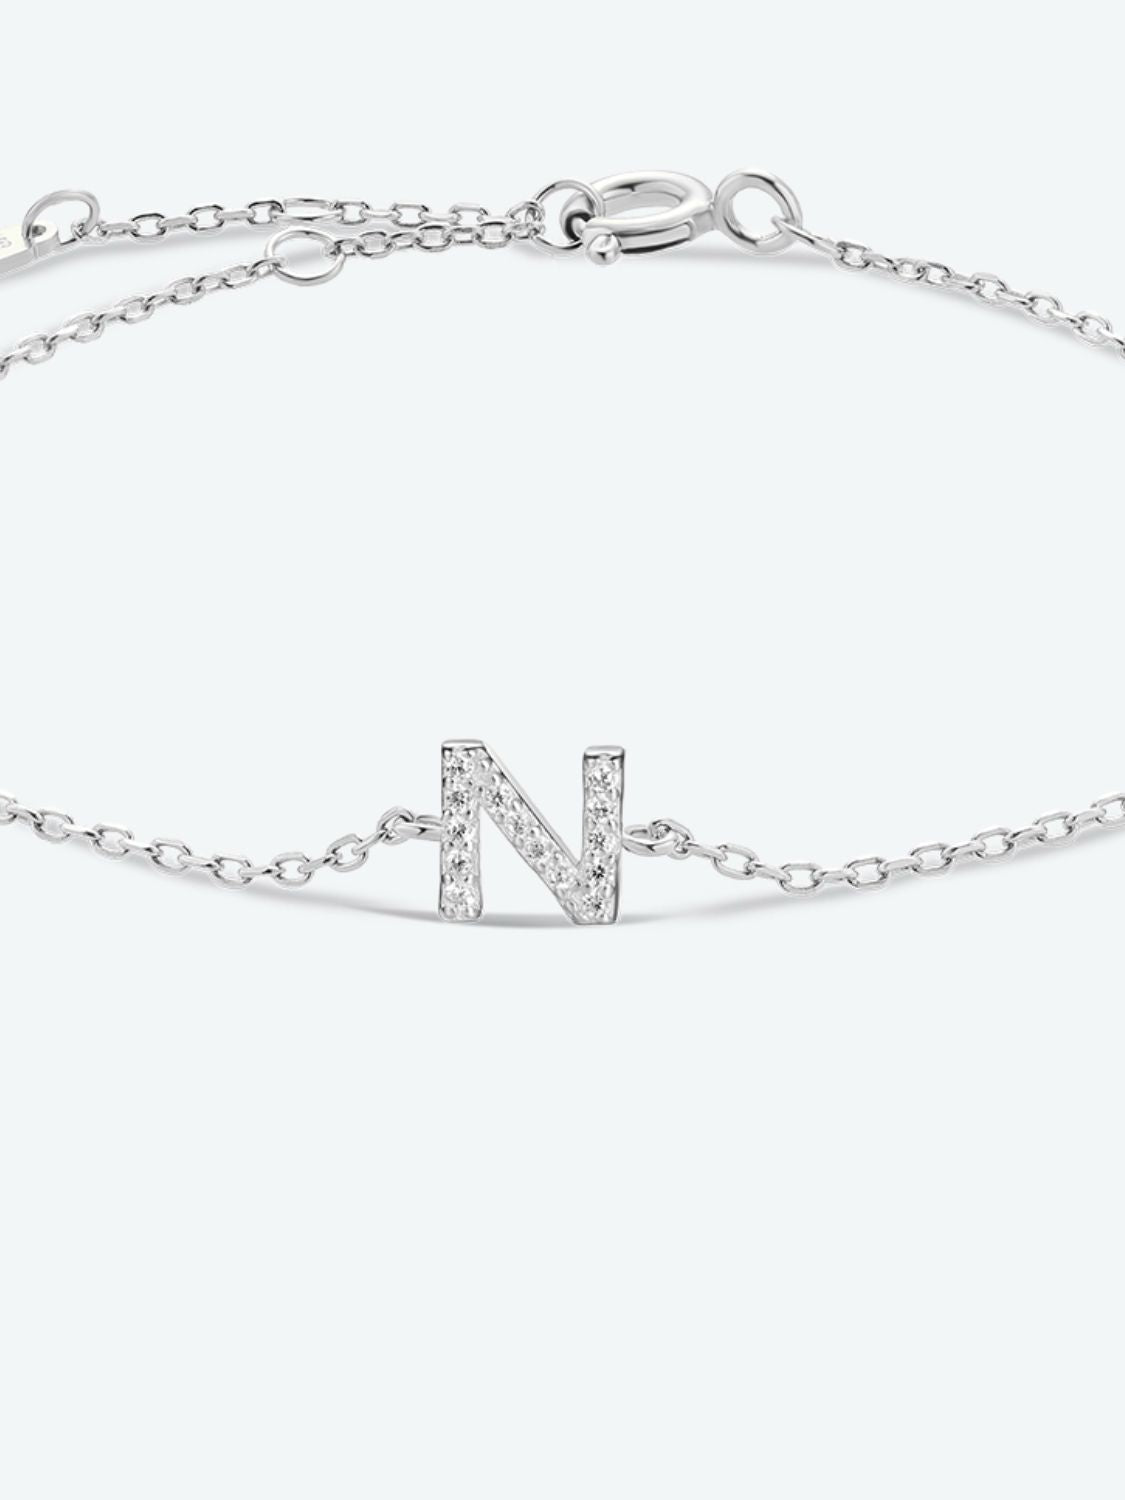 L To P Zircon 925 Sterling Silver Bracelet - Women’s Jewelry - Bracelets - 18 - 2024